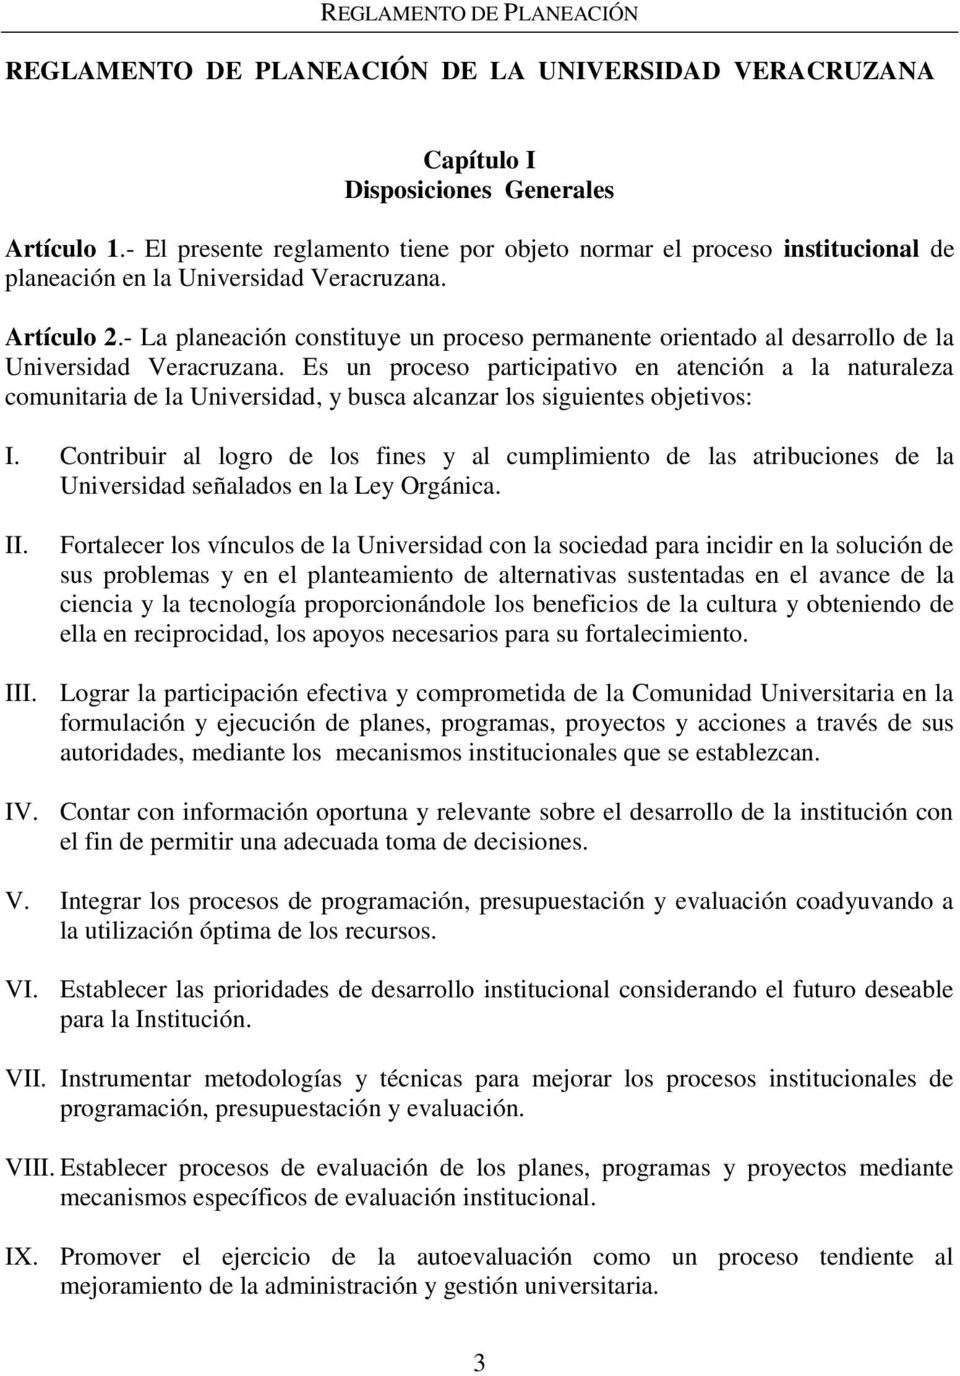 - La planeación constituye un proceso permanente orientado al desarrollo de la Universidad Veracruzana.